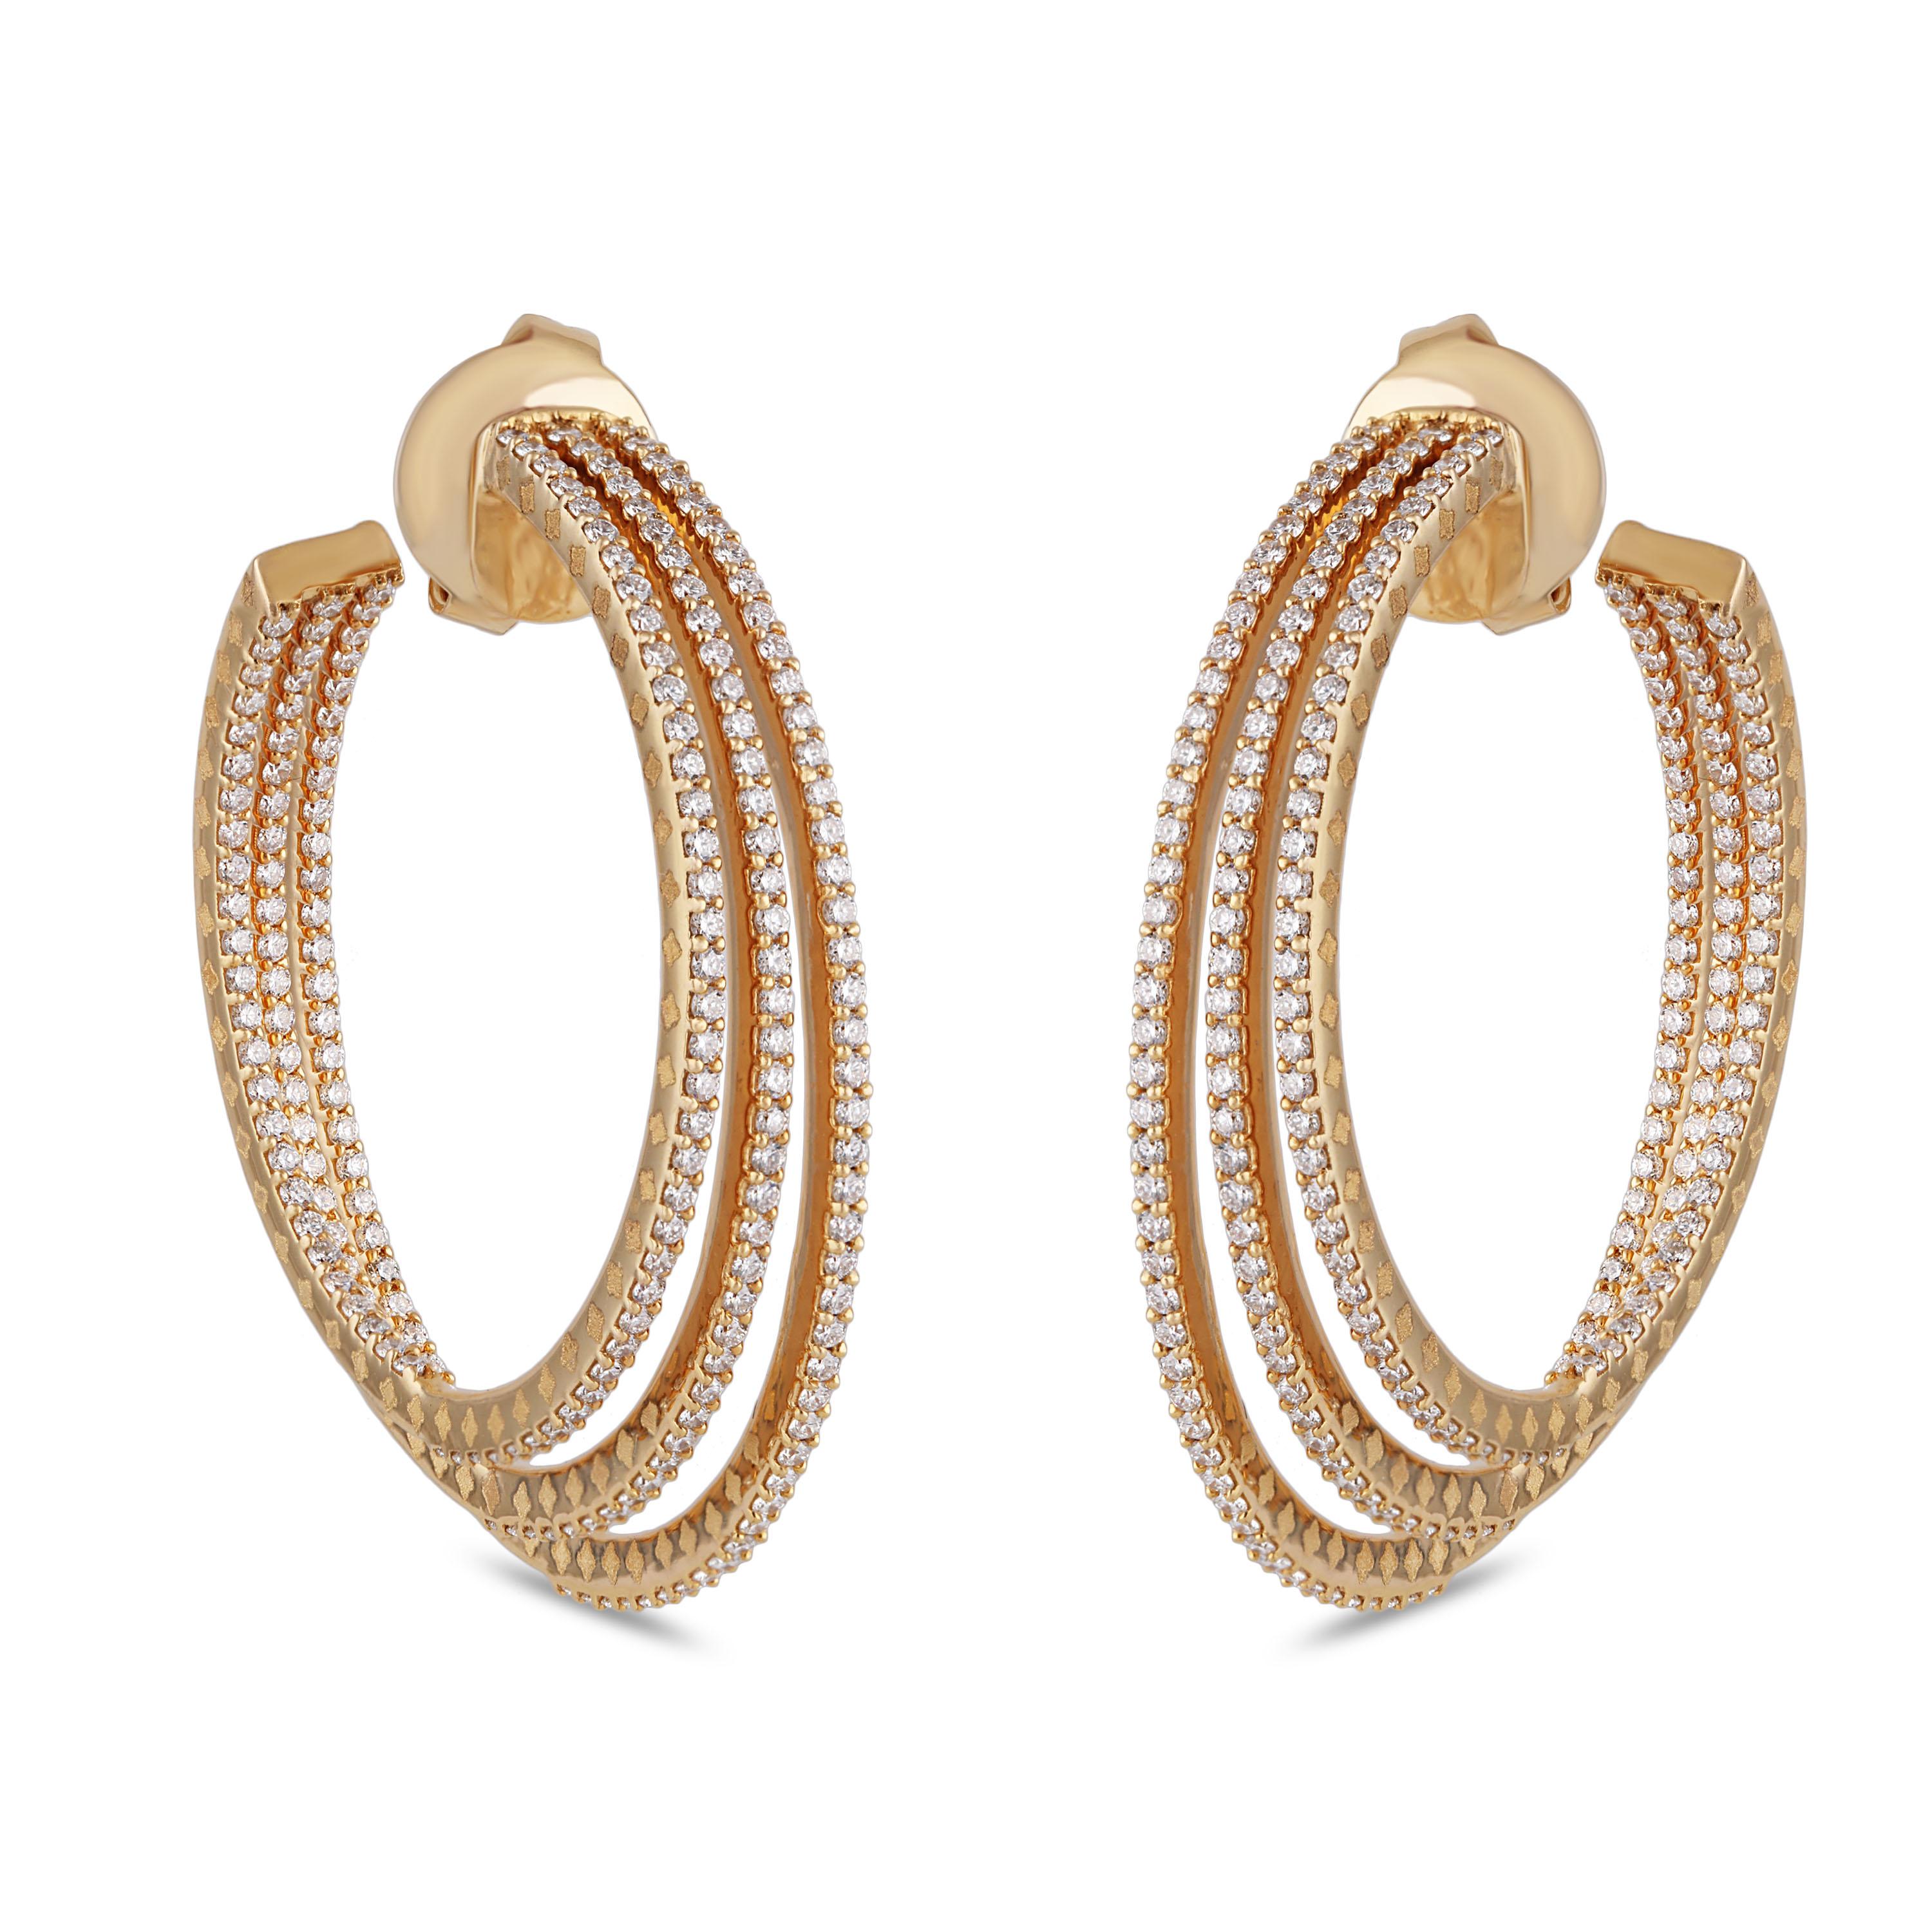 Round Cut Studio Rêves Diamond Hoop Earrings in 18 Karat Yellow Gold For Sale